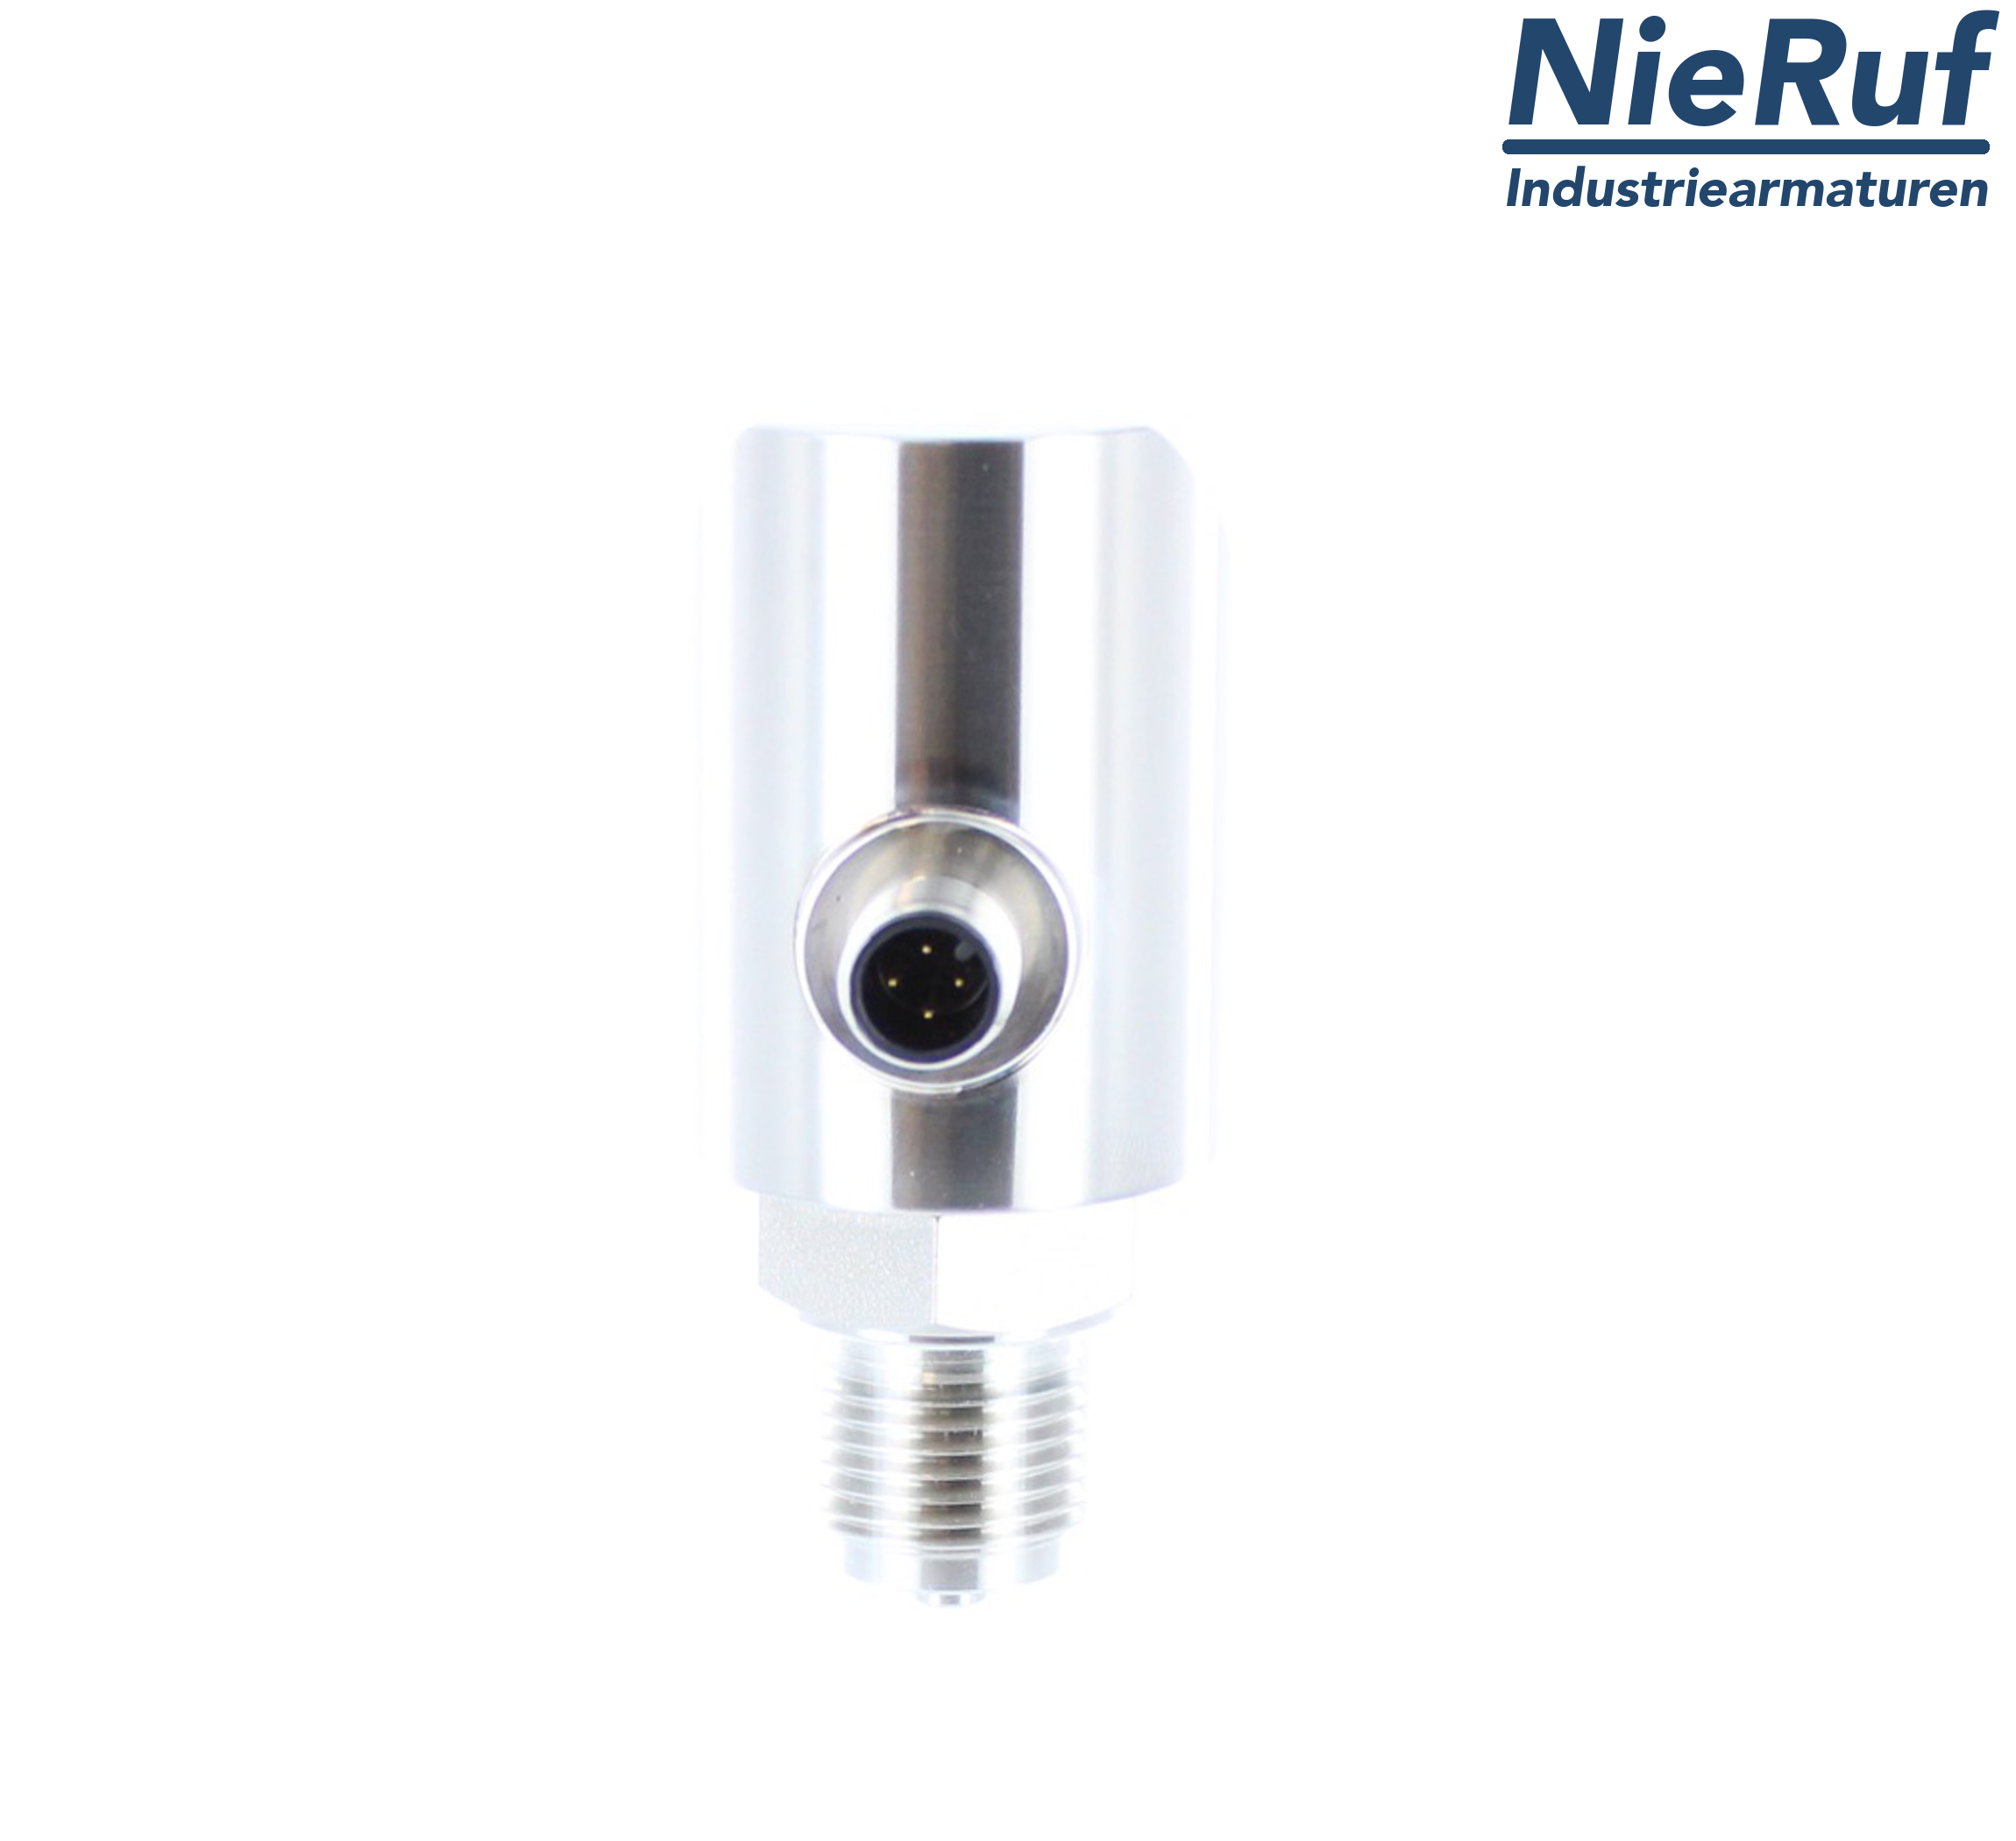 digital pressure sensor G 1/2" B IB 5-wire: 2xPNP, 1x4 - 20mA FPM 0,0 - 6,0 bar